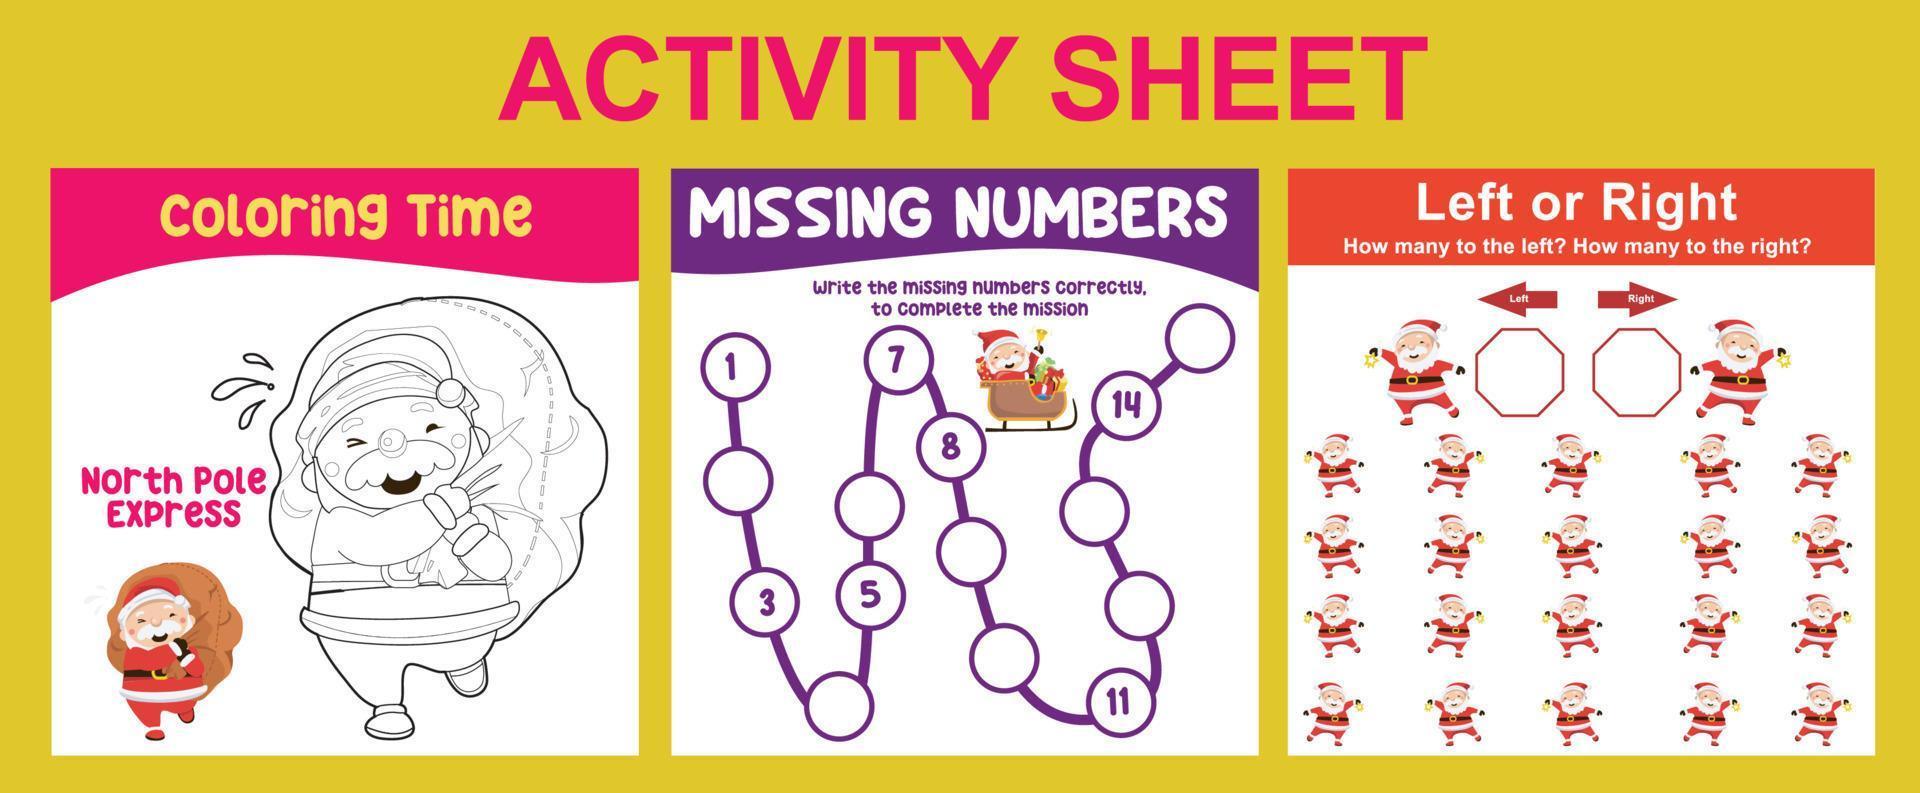 Hoja de actividades 3 en 1 para niños. hoja de trabajo imprimible educativa para preescolar. colorear, números que faltan y actividad izquierda o derecha. ilustraciones vectoriales. vector